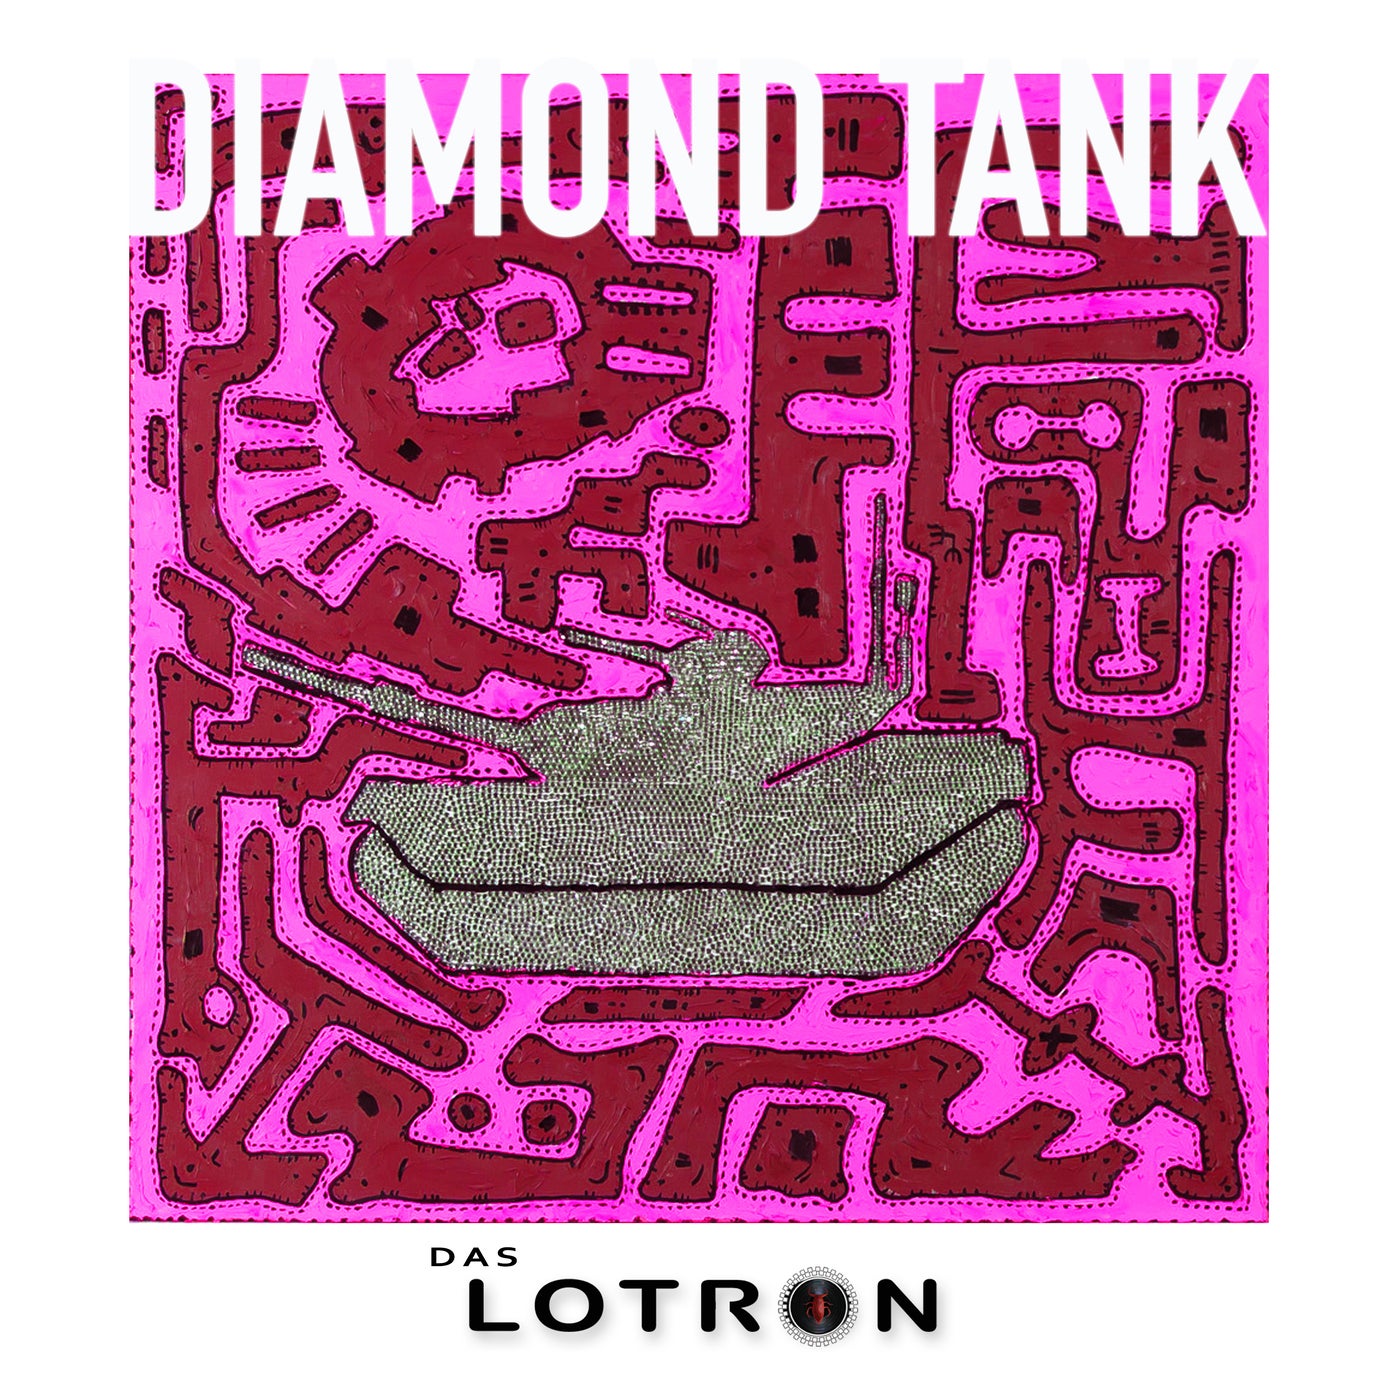 Diamond Tank